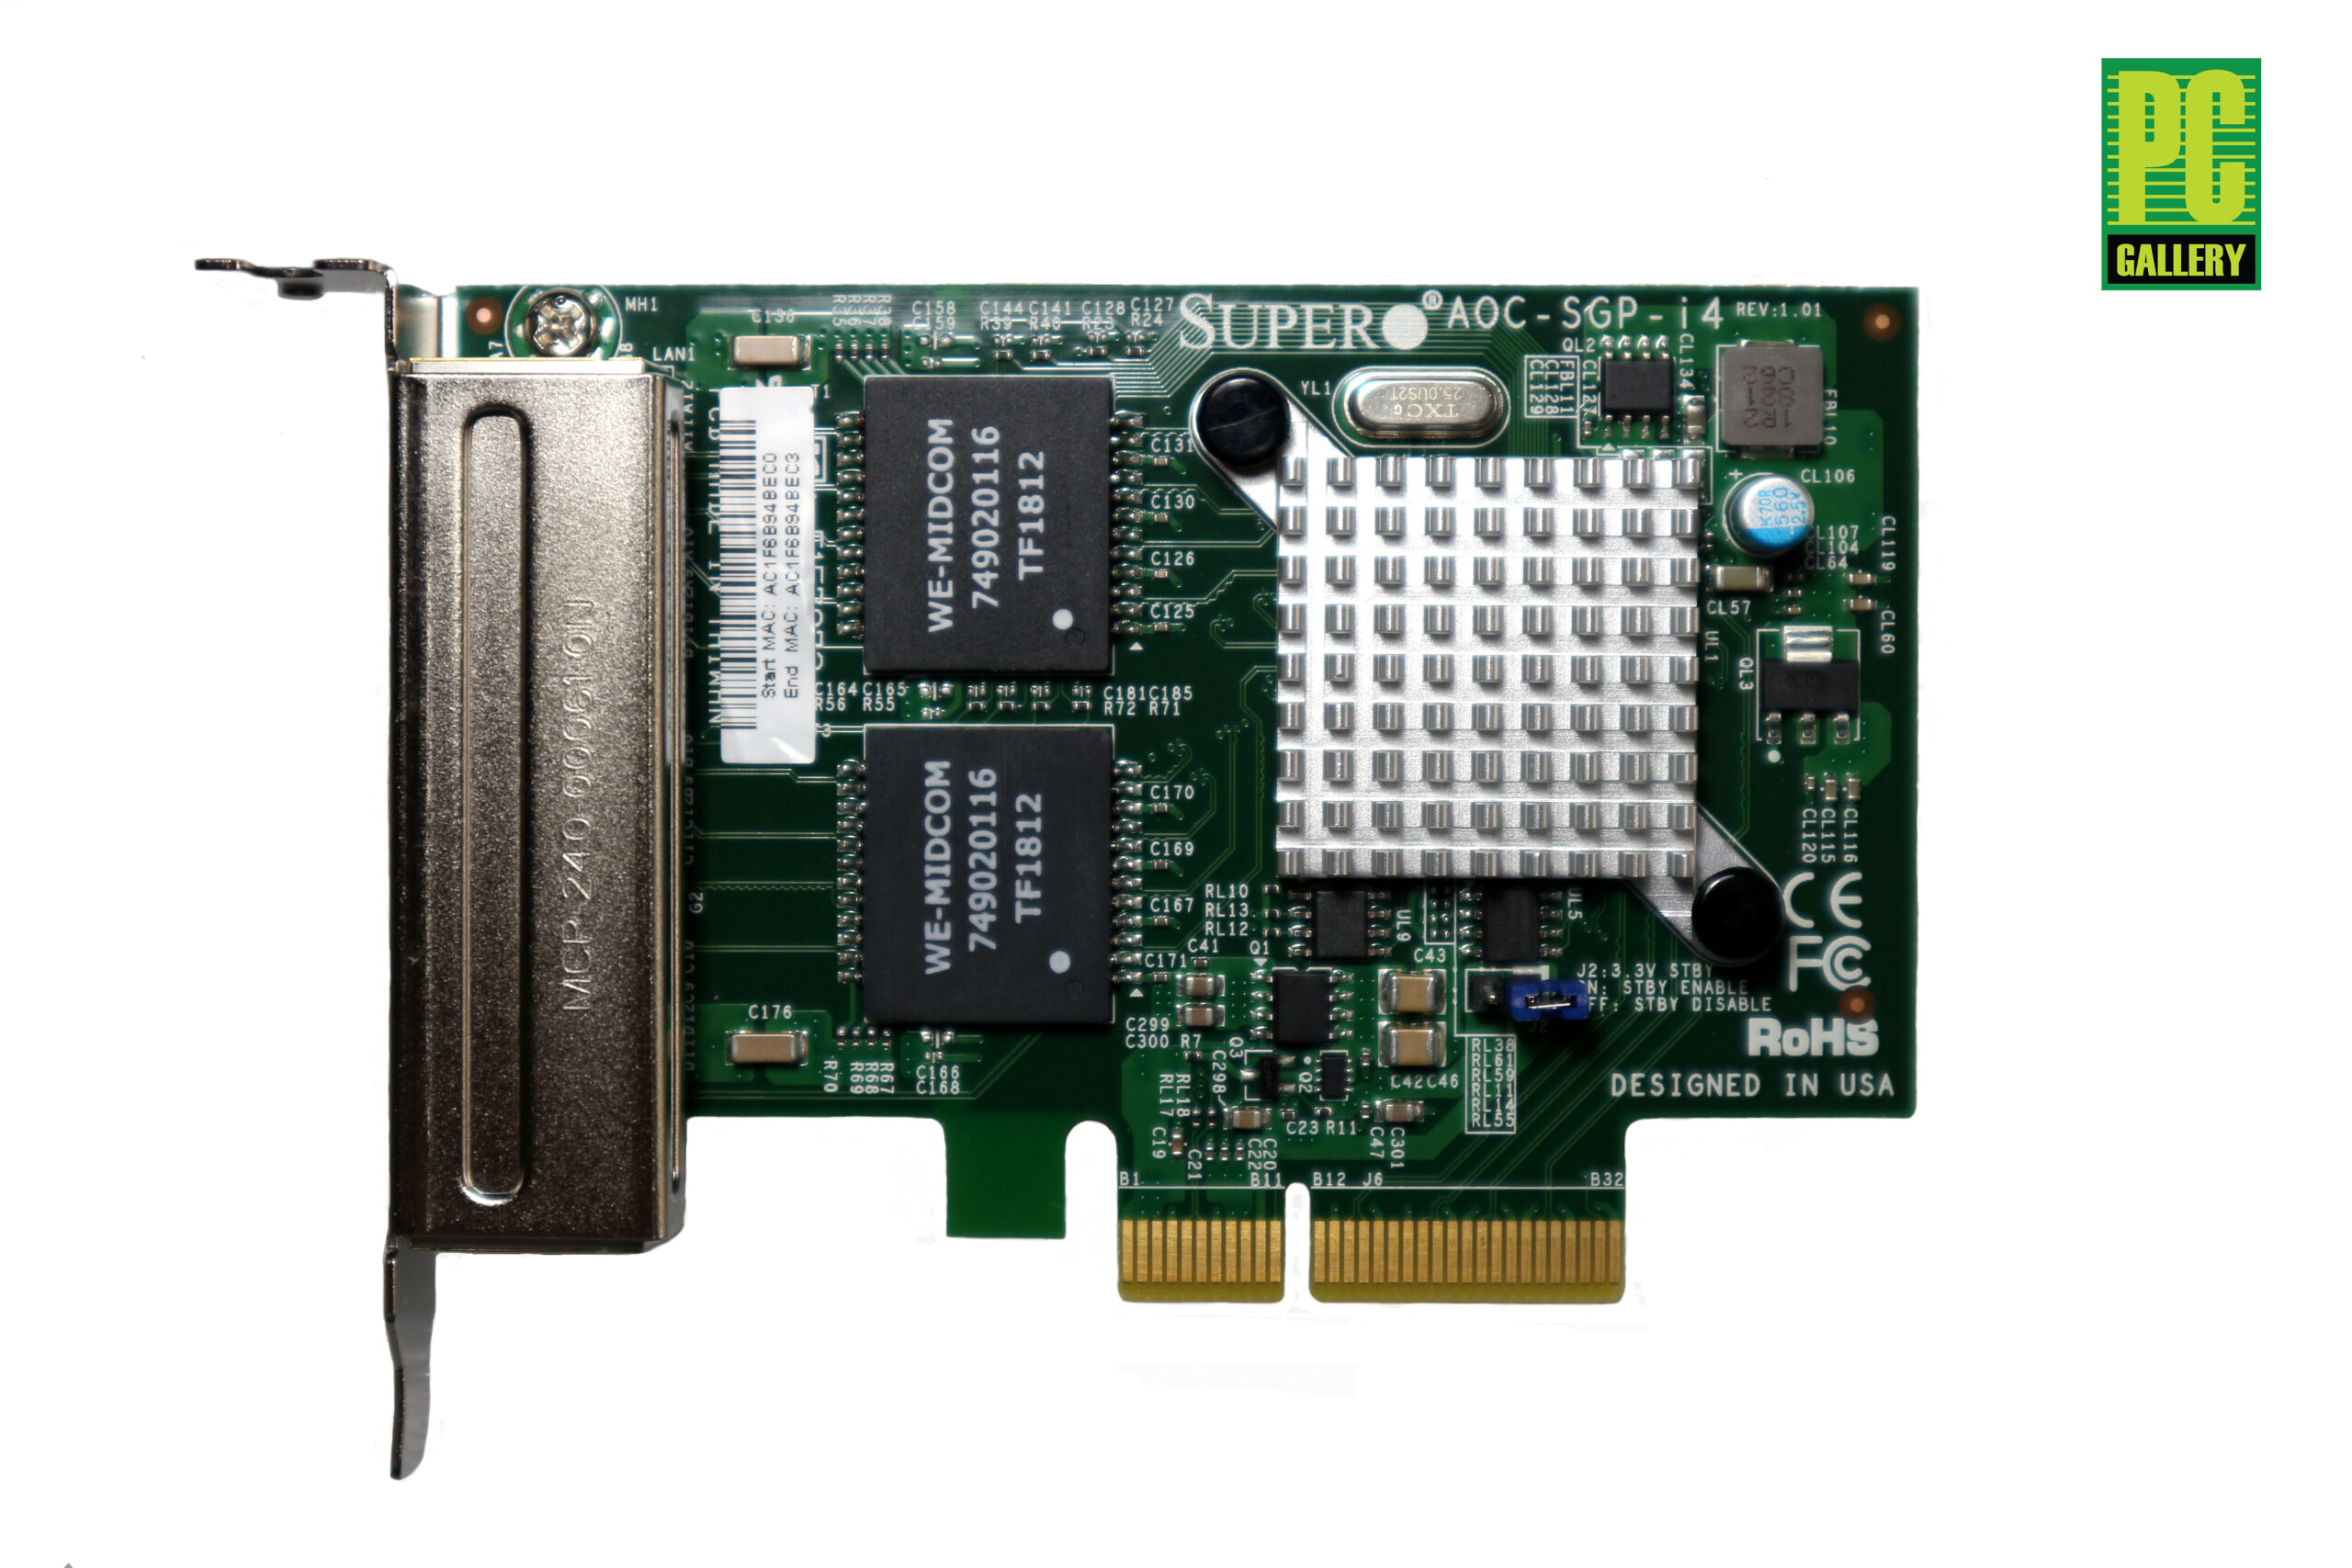 แลนการ์ด Supermicro AOC-SGP-I4, Intel i350-T4 (ประกัน 1 ปี) - PC 